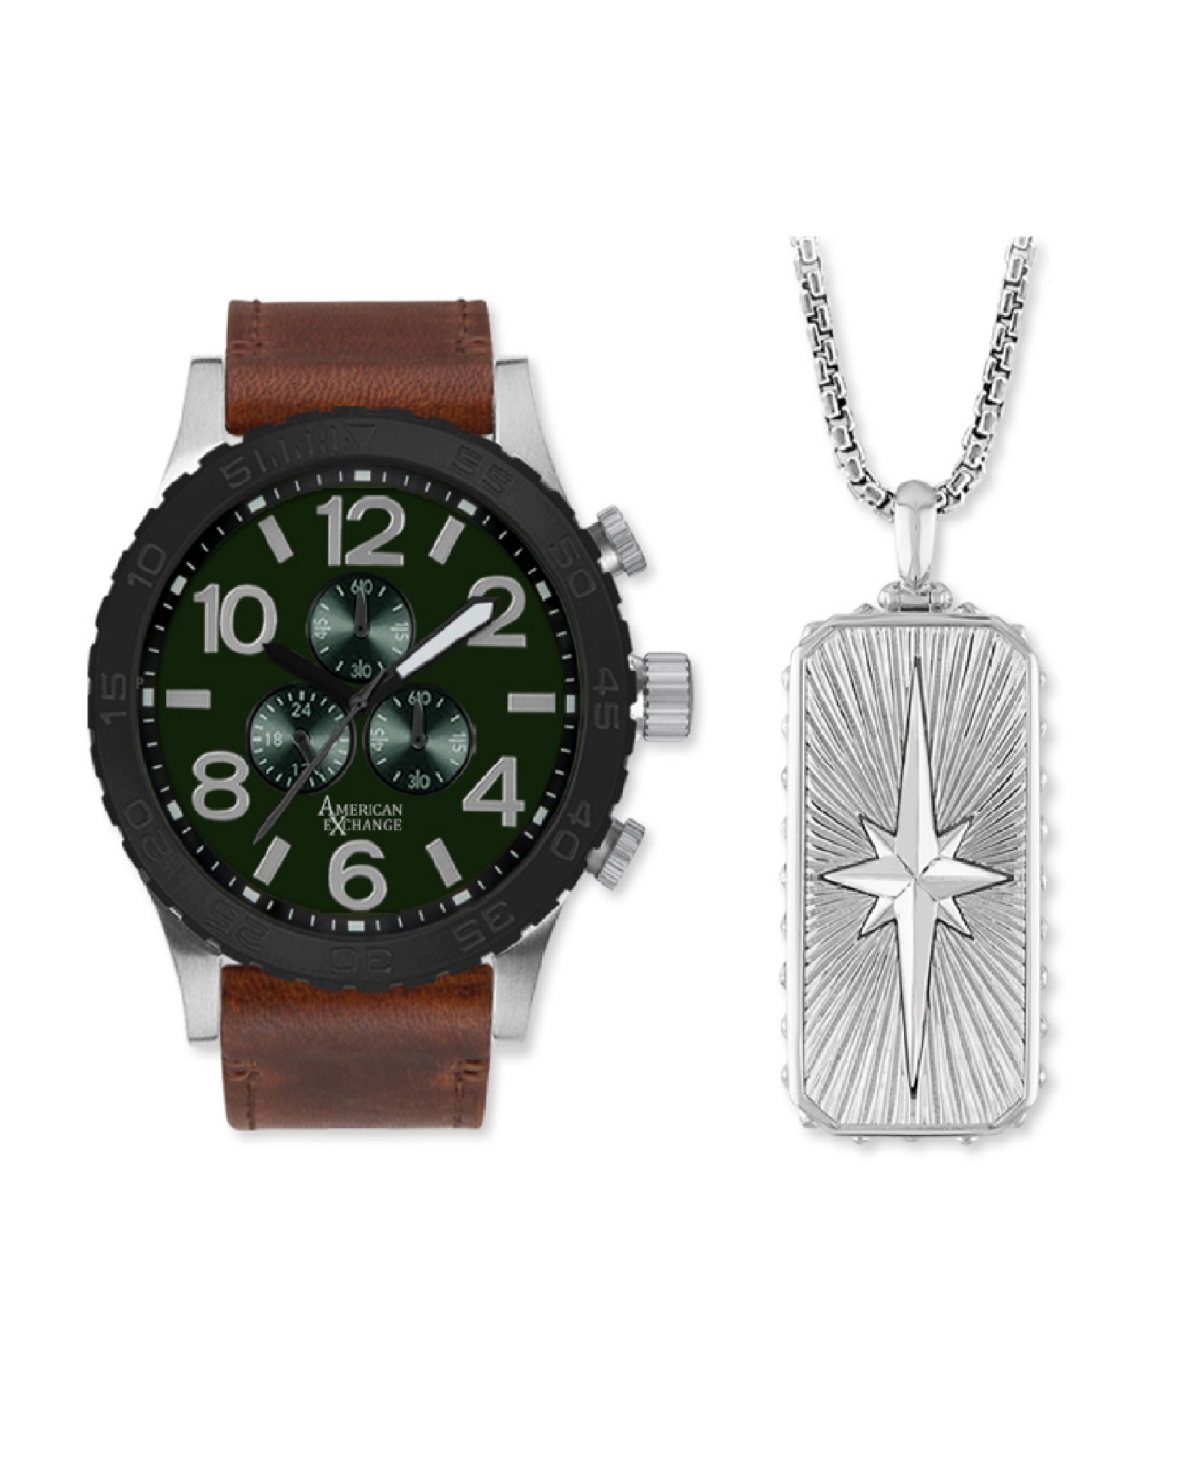 American Exchange Men's Quartz Brown Polyurethane Leather Strap Watch 48mm Gift Set In Brown,matte Green